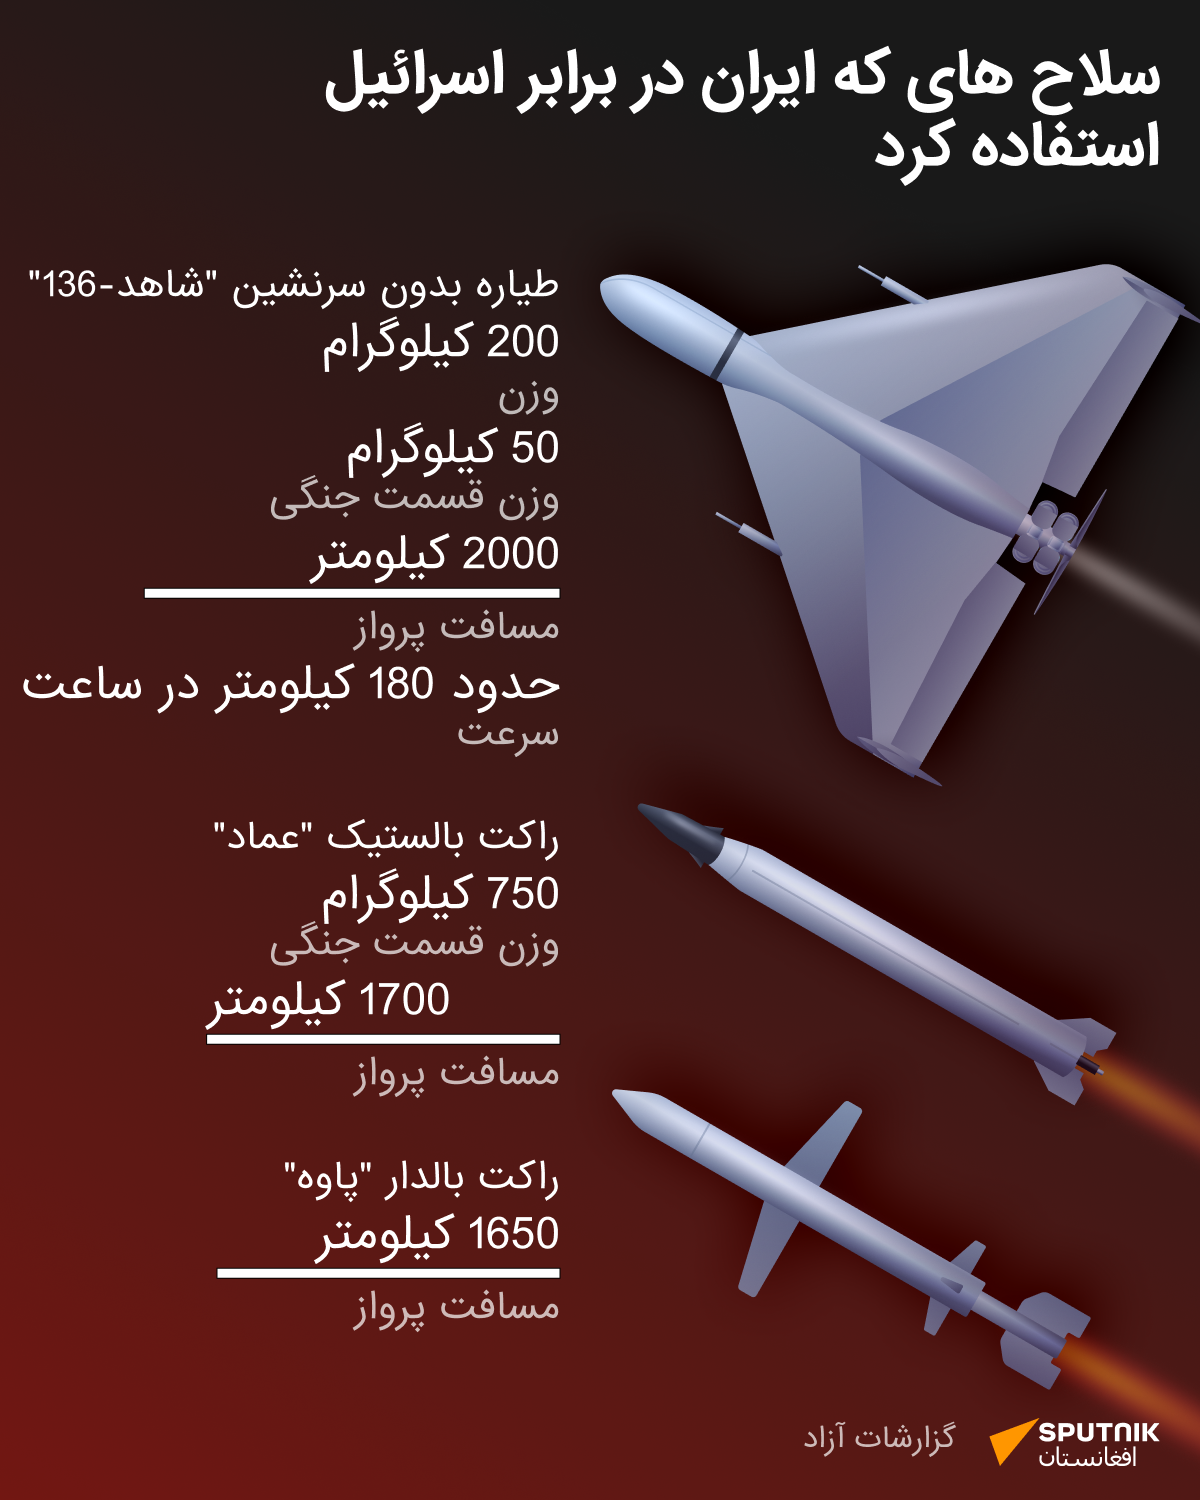 سلاح های که ایران در برابر اسرائیل استفاده کرد - اسپوتنیک افغانستان  